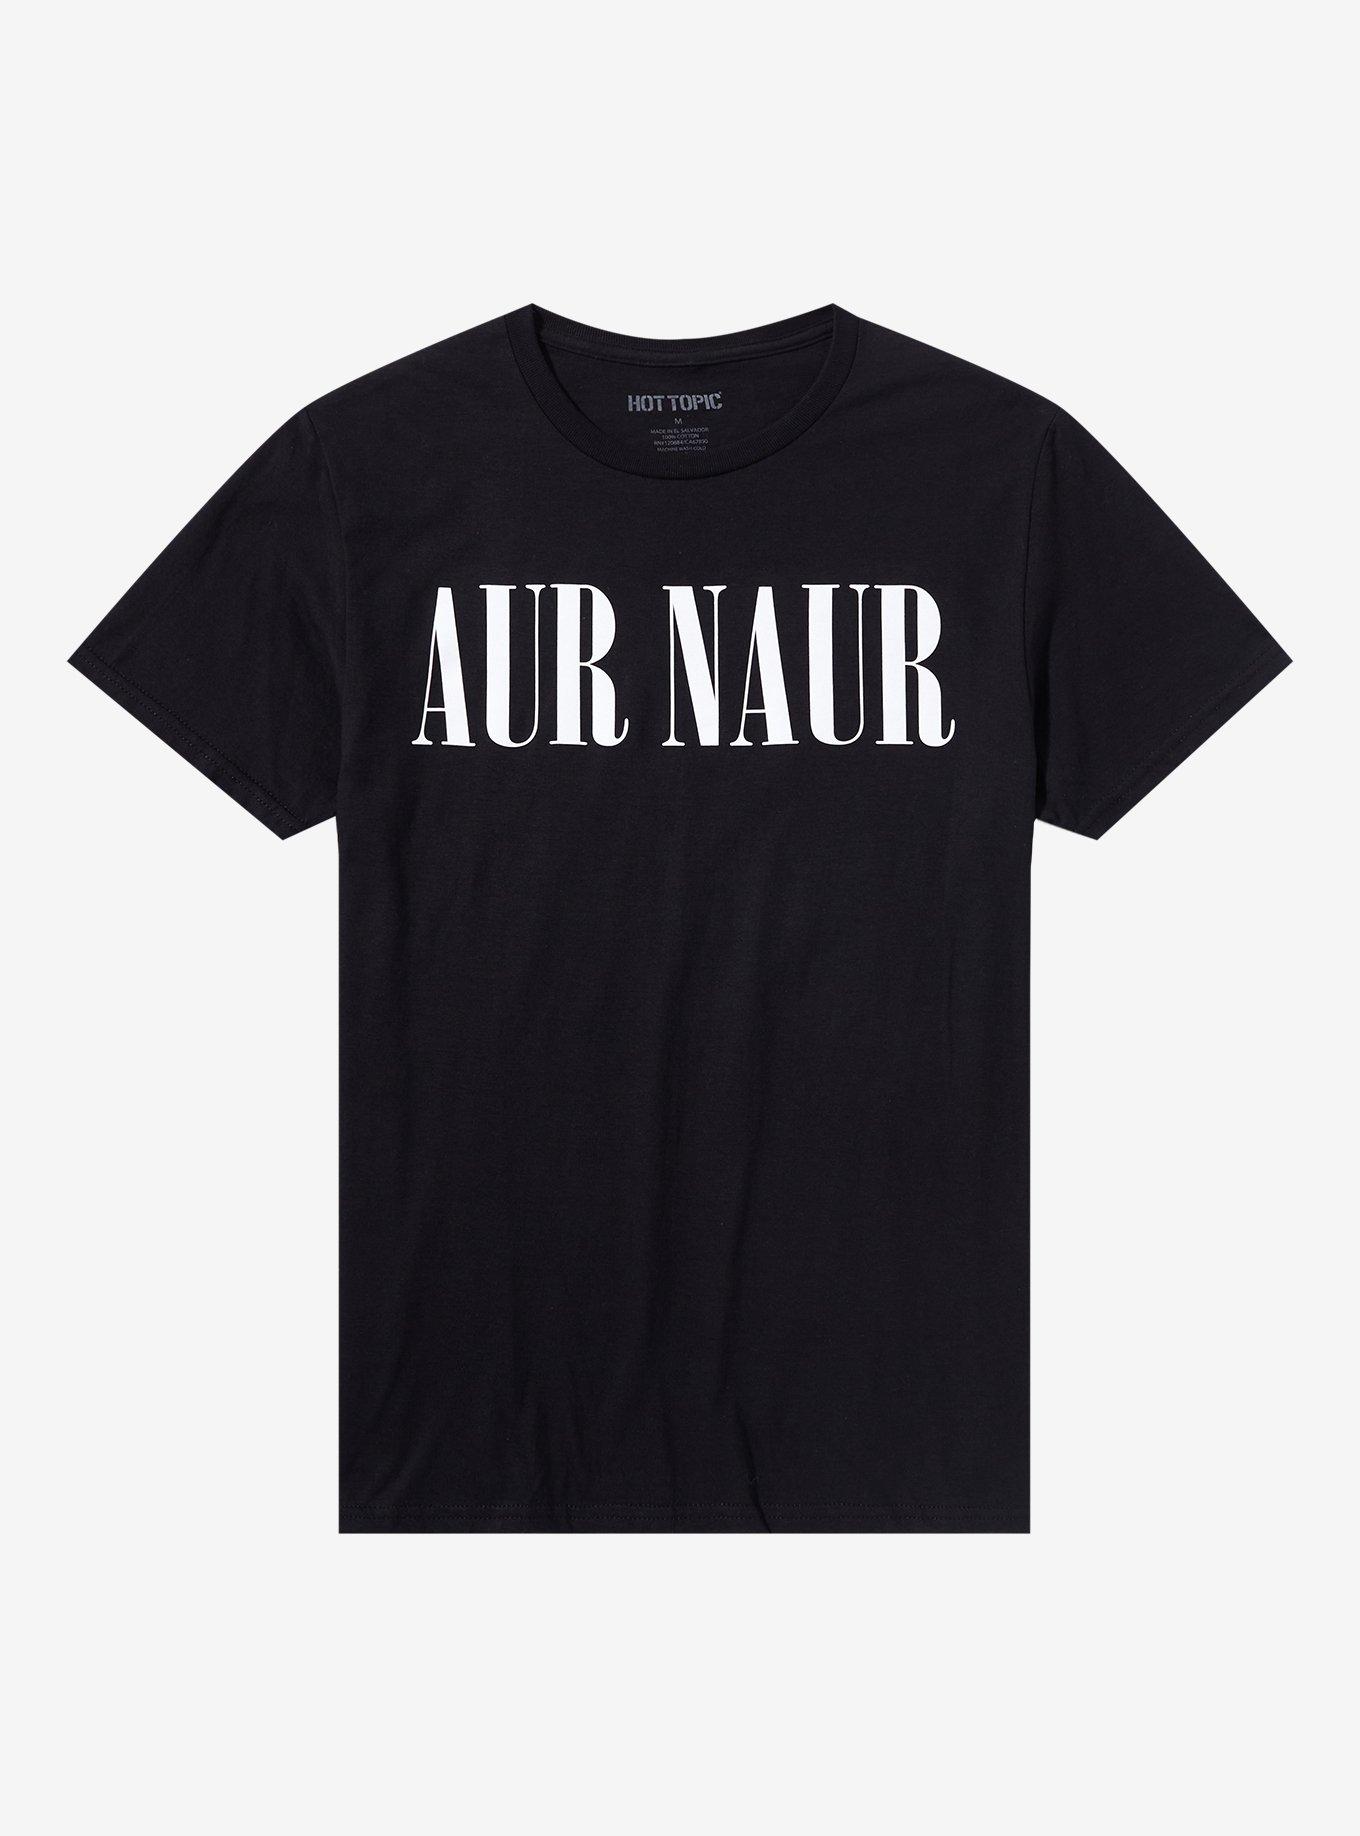 Aur Naur T-Shirt, BLACK, hi-res